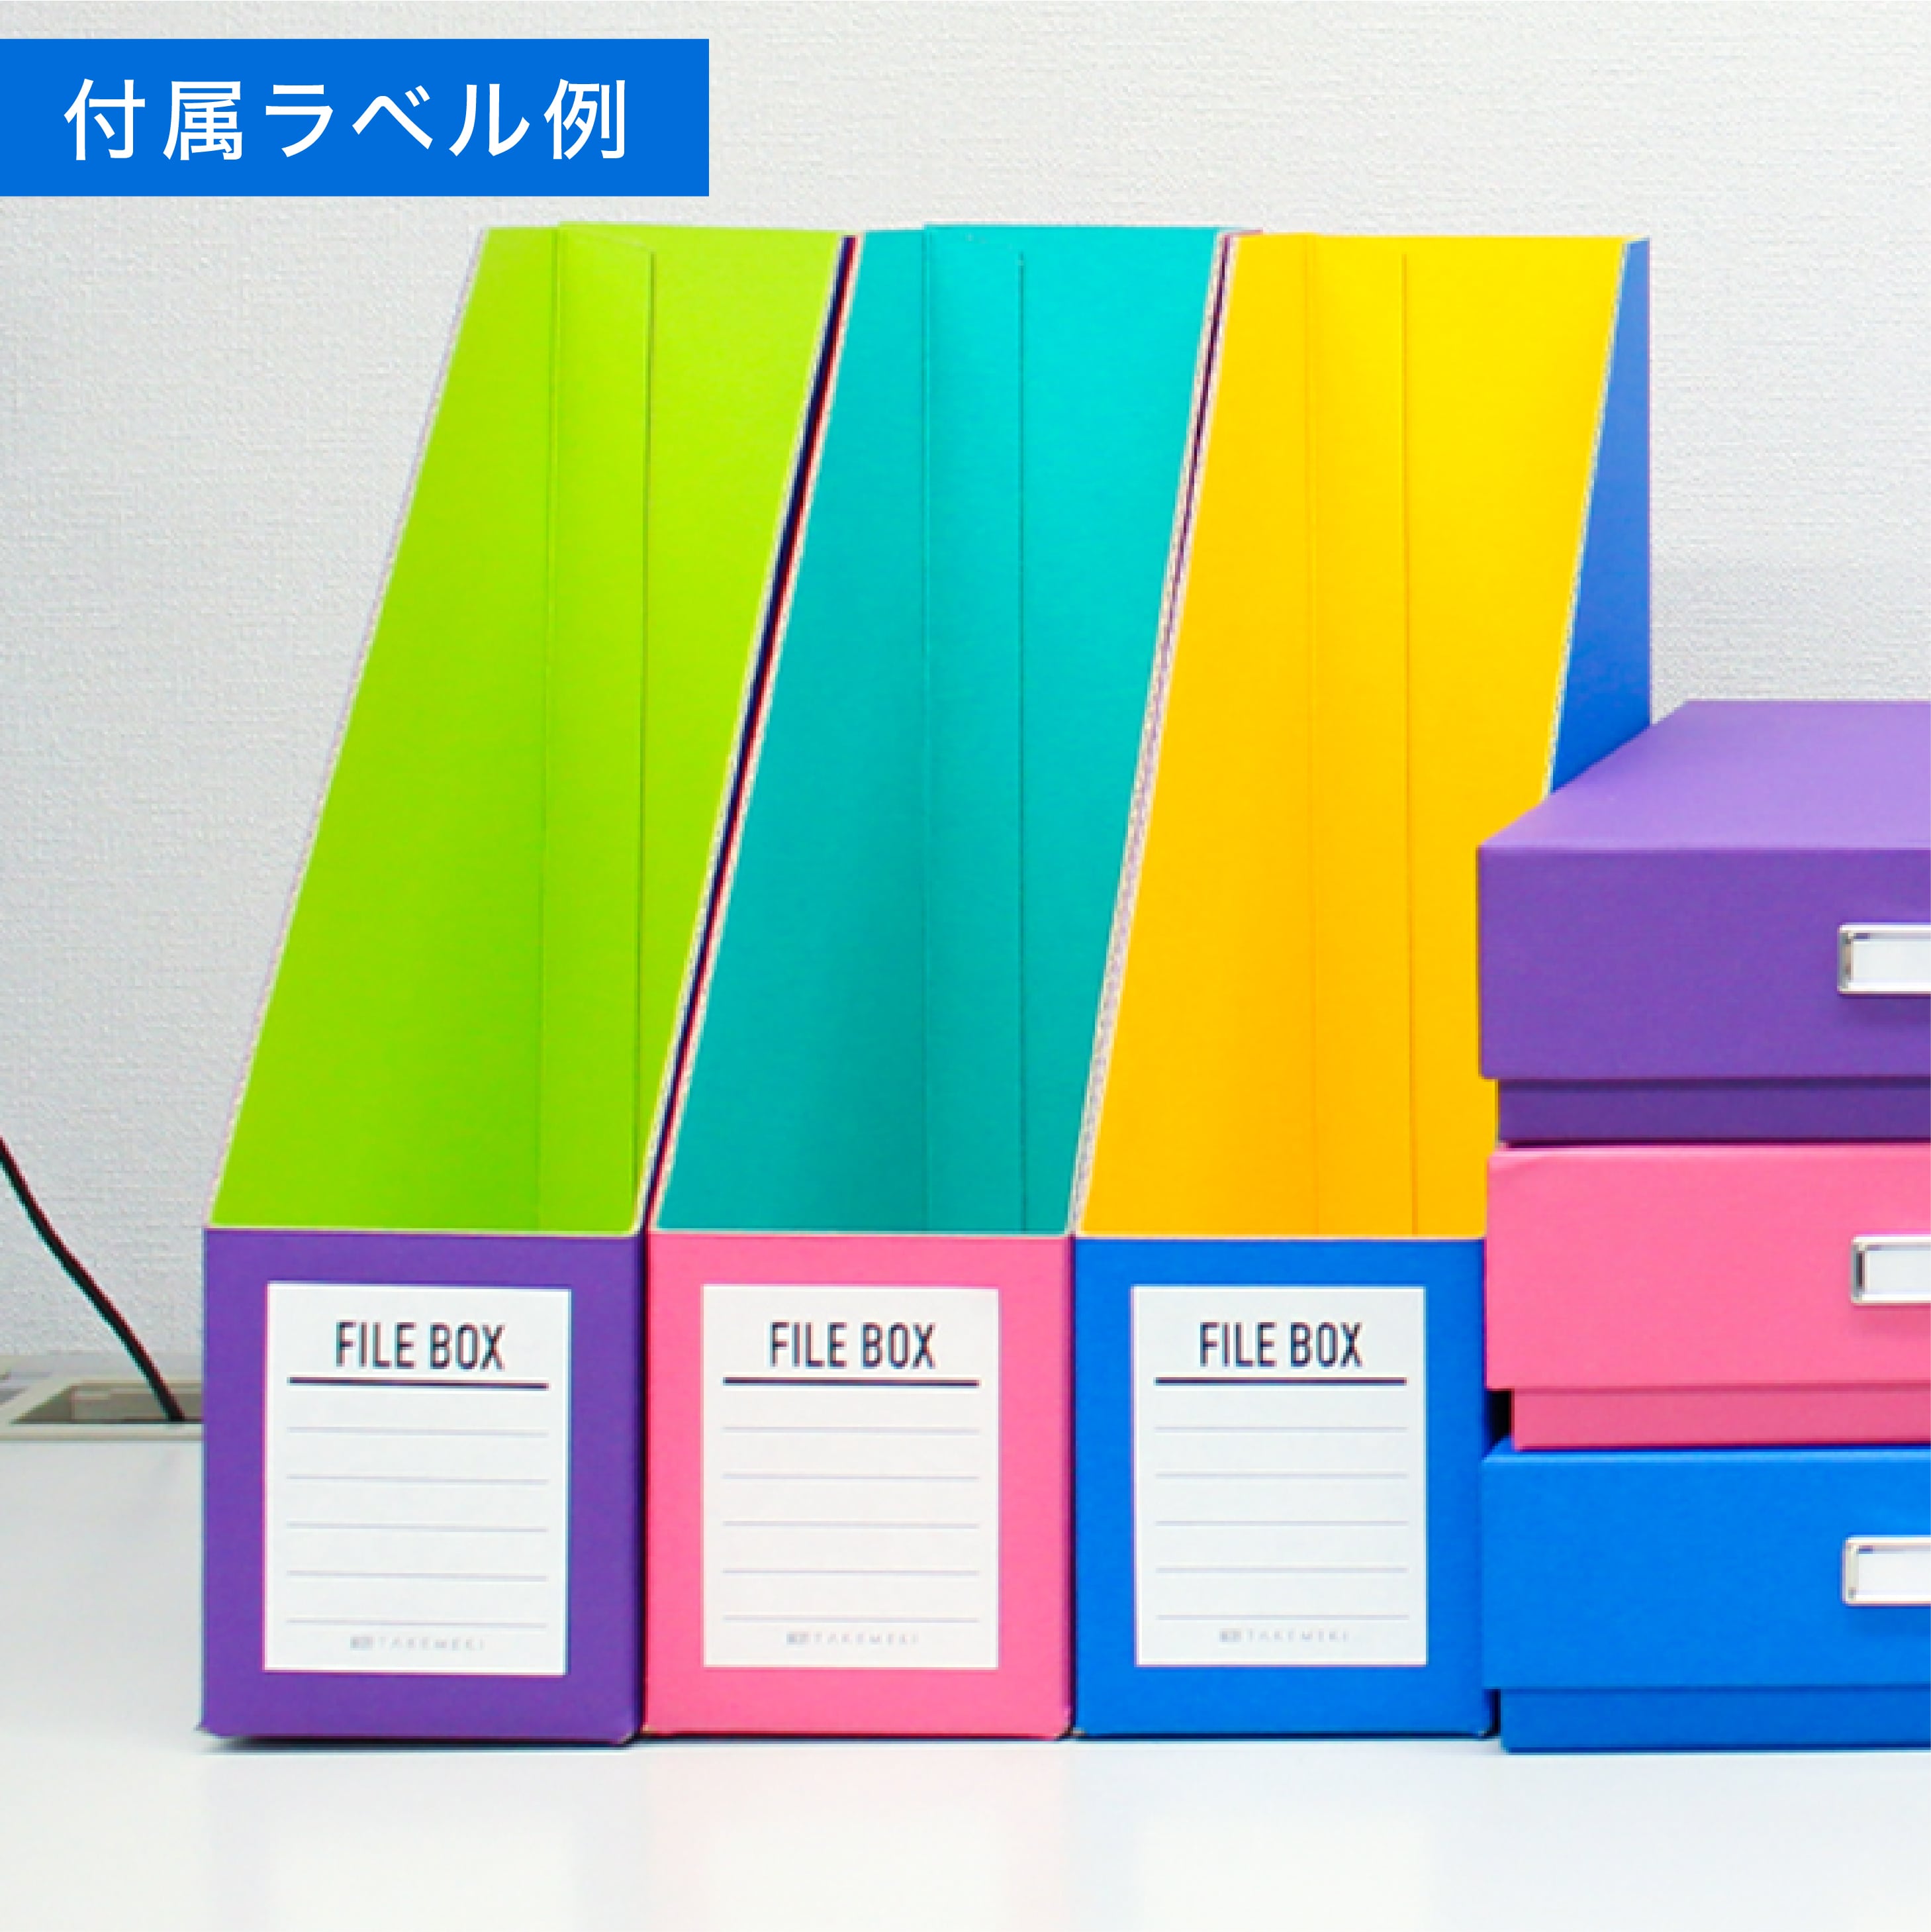 ファイルボックス 3個セット(ブルー/ピンク/パープル) A4サイズ 縦置き ...